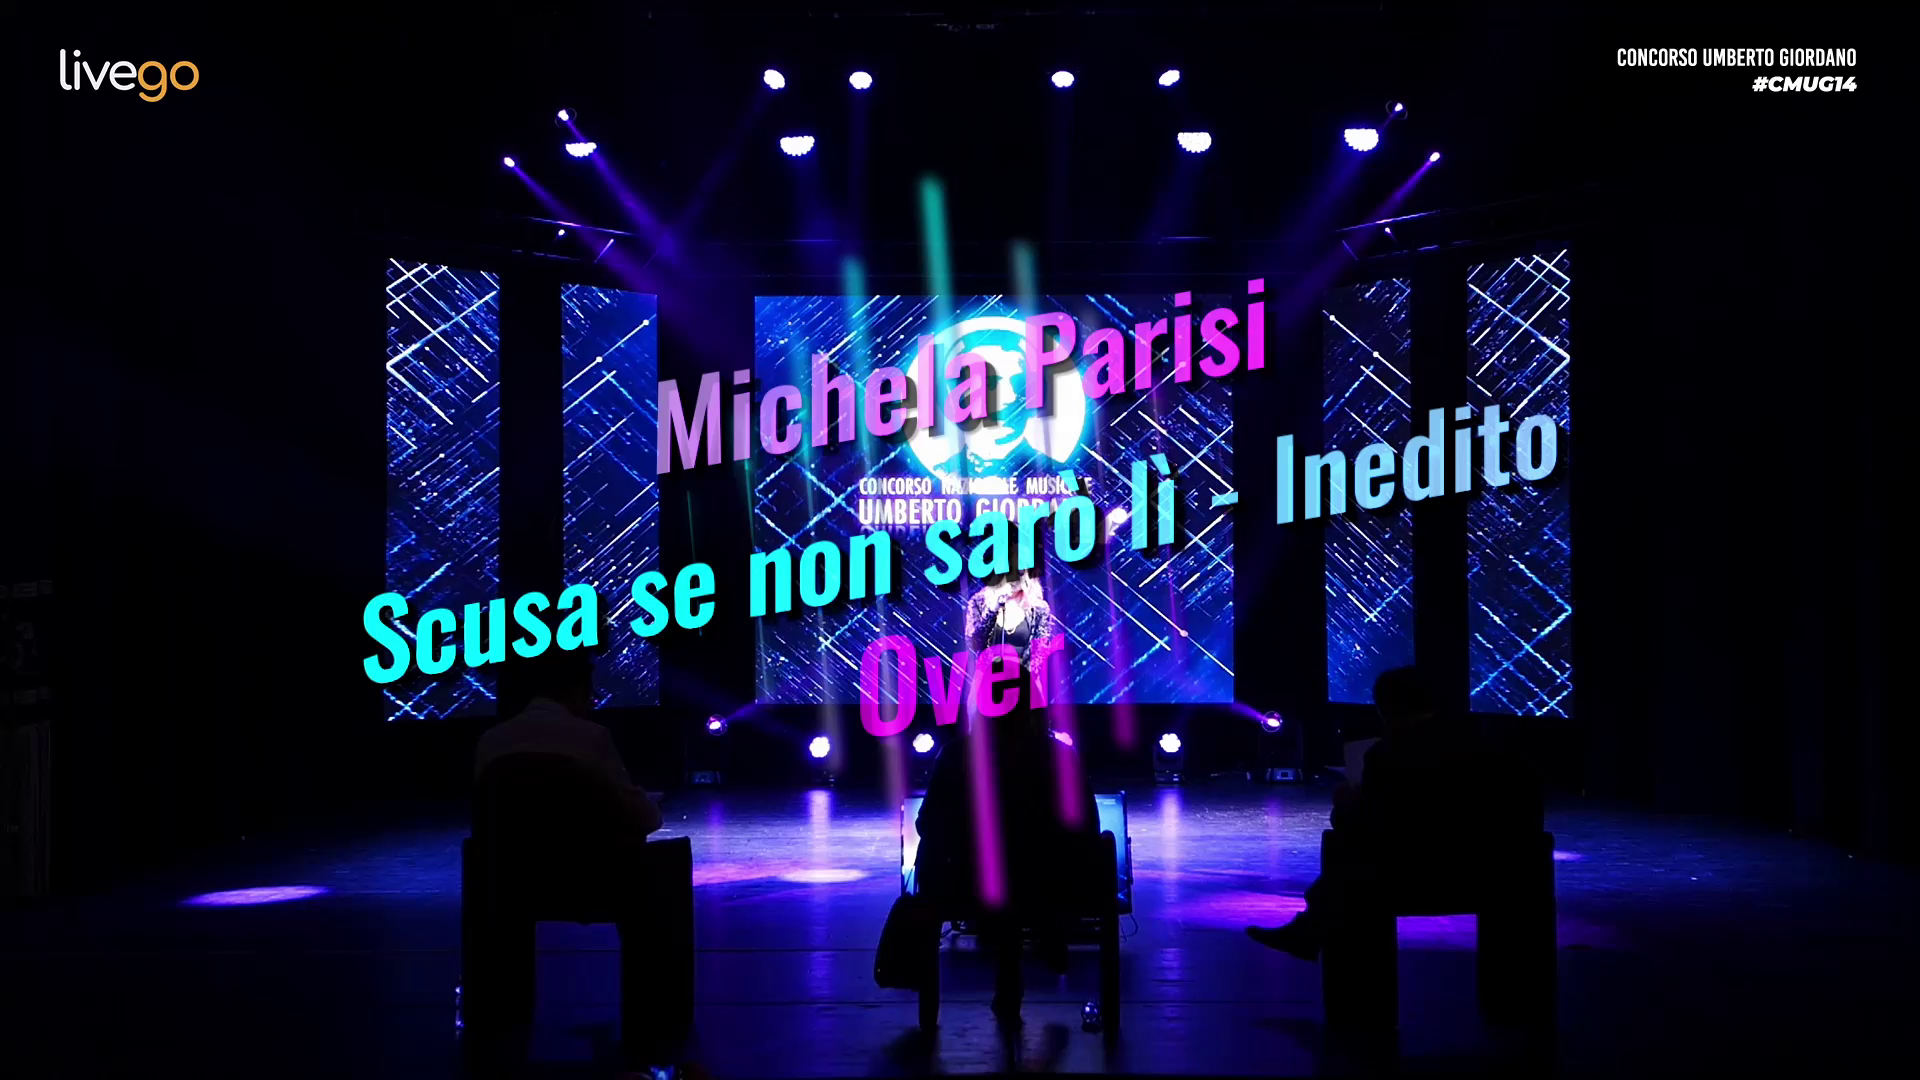 14 - Michela Parisi